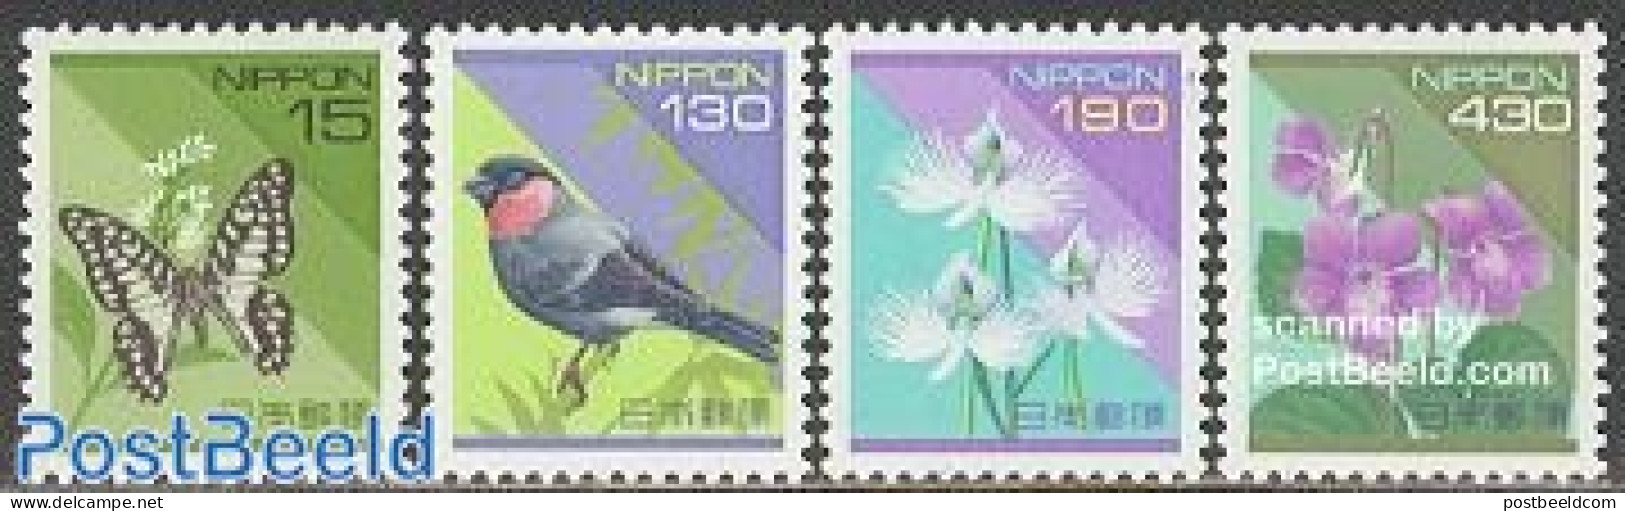 Japan 1994 Definitives 4v, Mint NH, Nature - Birds - Butterflies - Flowers & Plants - Ongebruikt